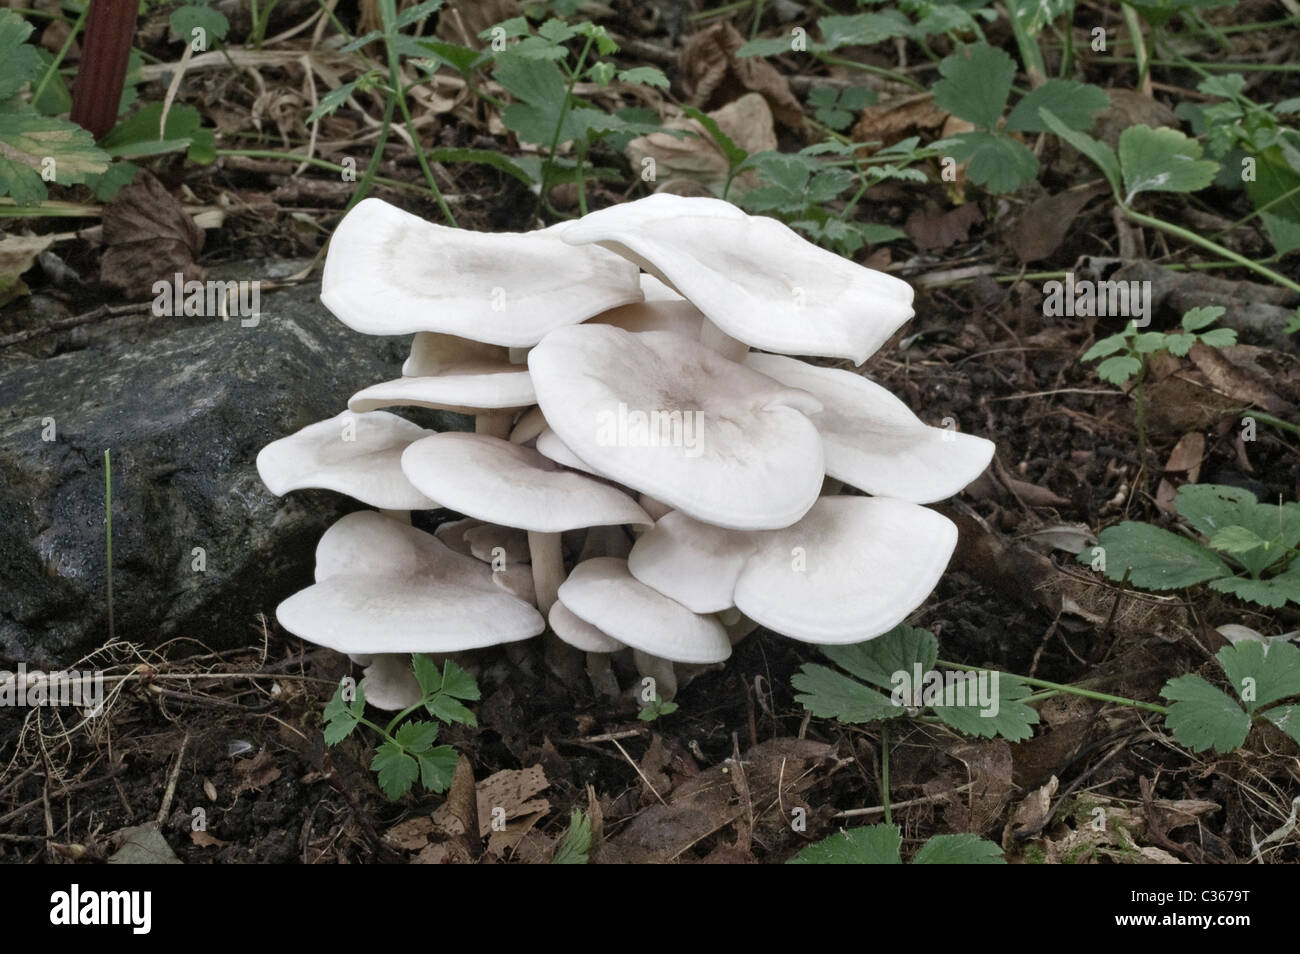 White Domecap mushroom (Lyophyllum connatum). Stock Photo